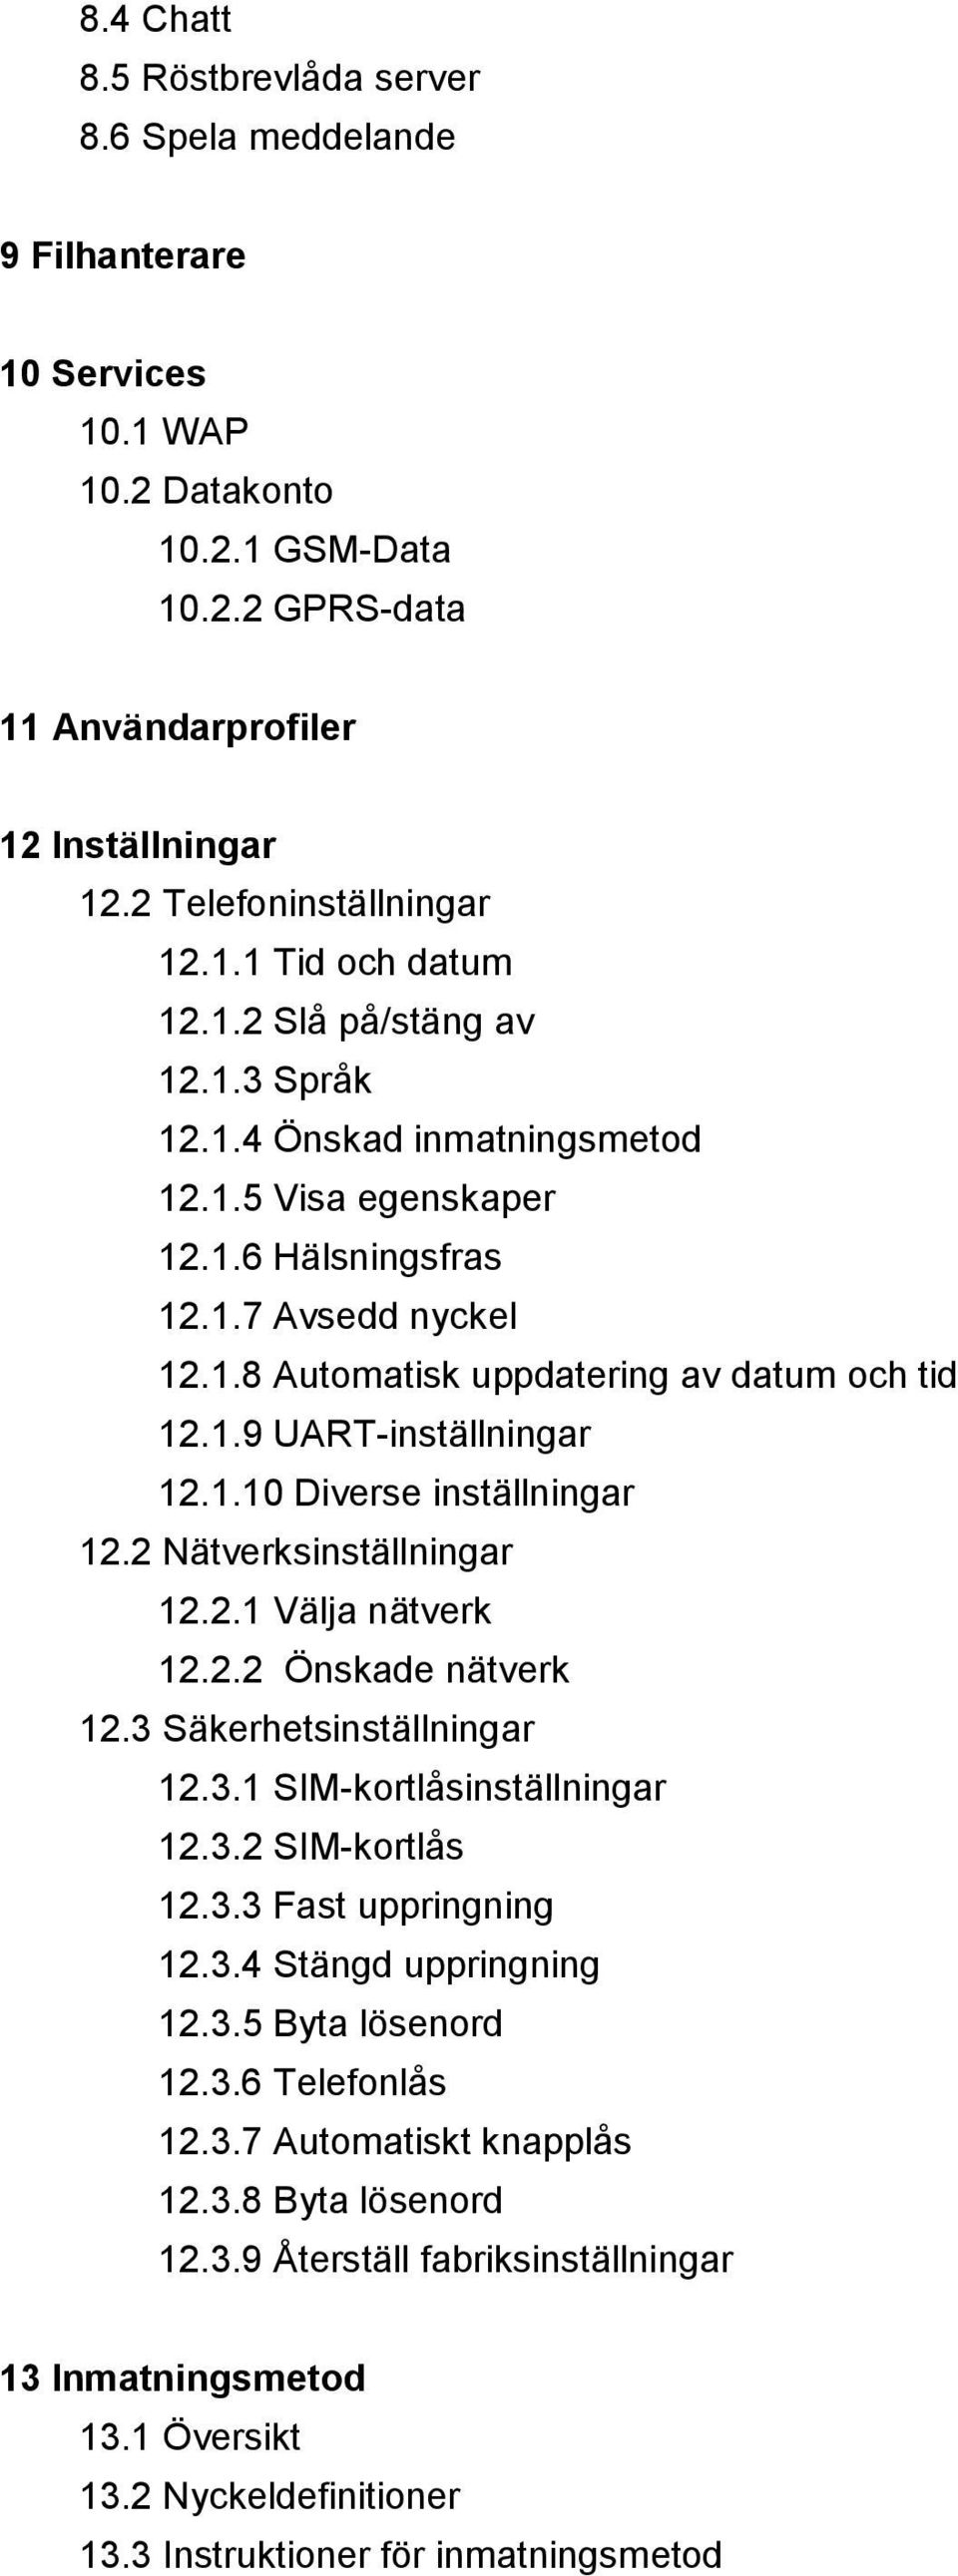 1.9 UART-inställningar 12.1.10 Diverse inställningar 12.2 Nätverksinställningar 12.2.1 Välja nätverk 12.2.2 Önskade nätverk 12.3 Säkerhetsinställningar 12.3.1 SIM-kortlåsinställningar 12.3.2 SIM-kortlås 12.